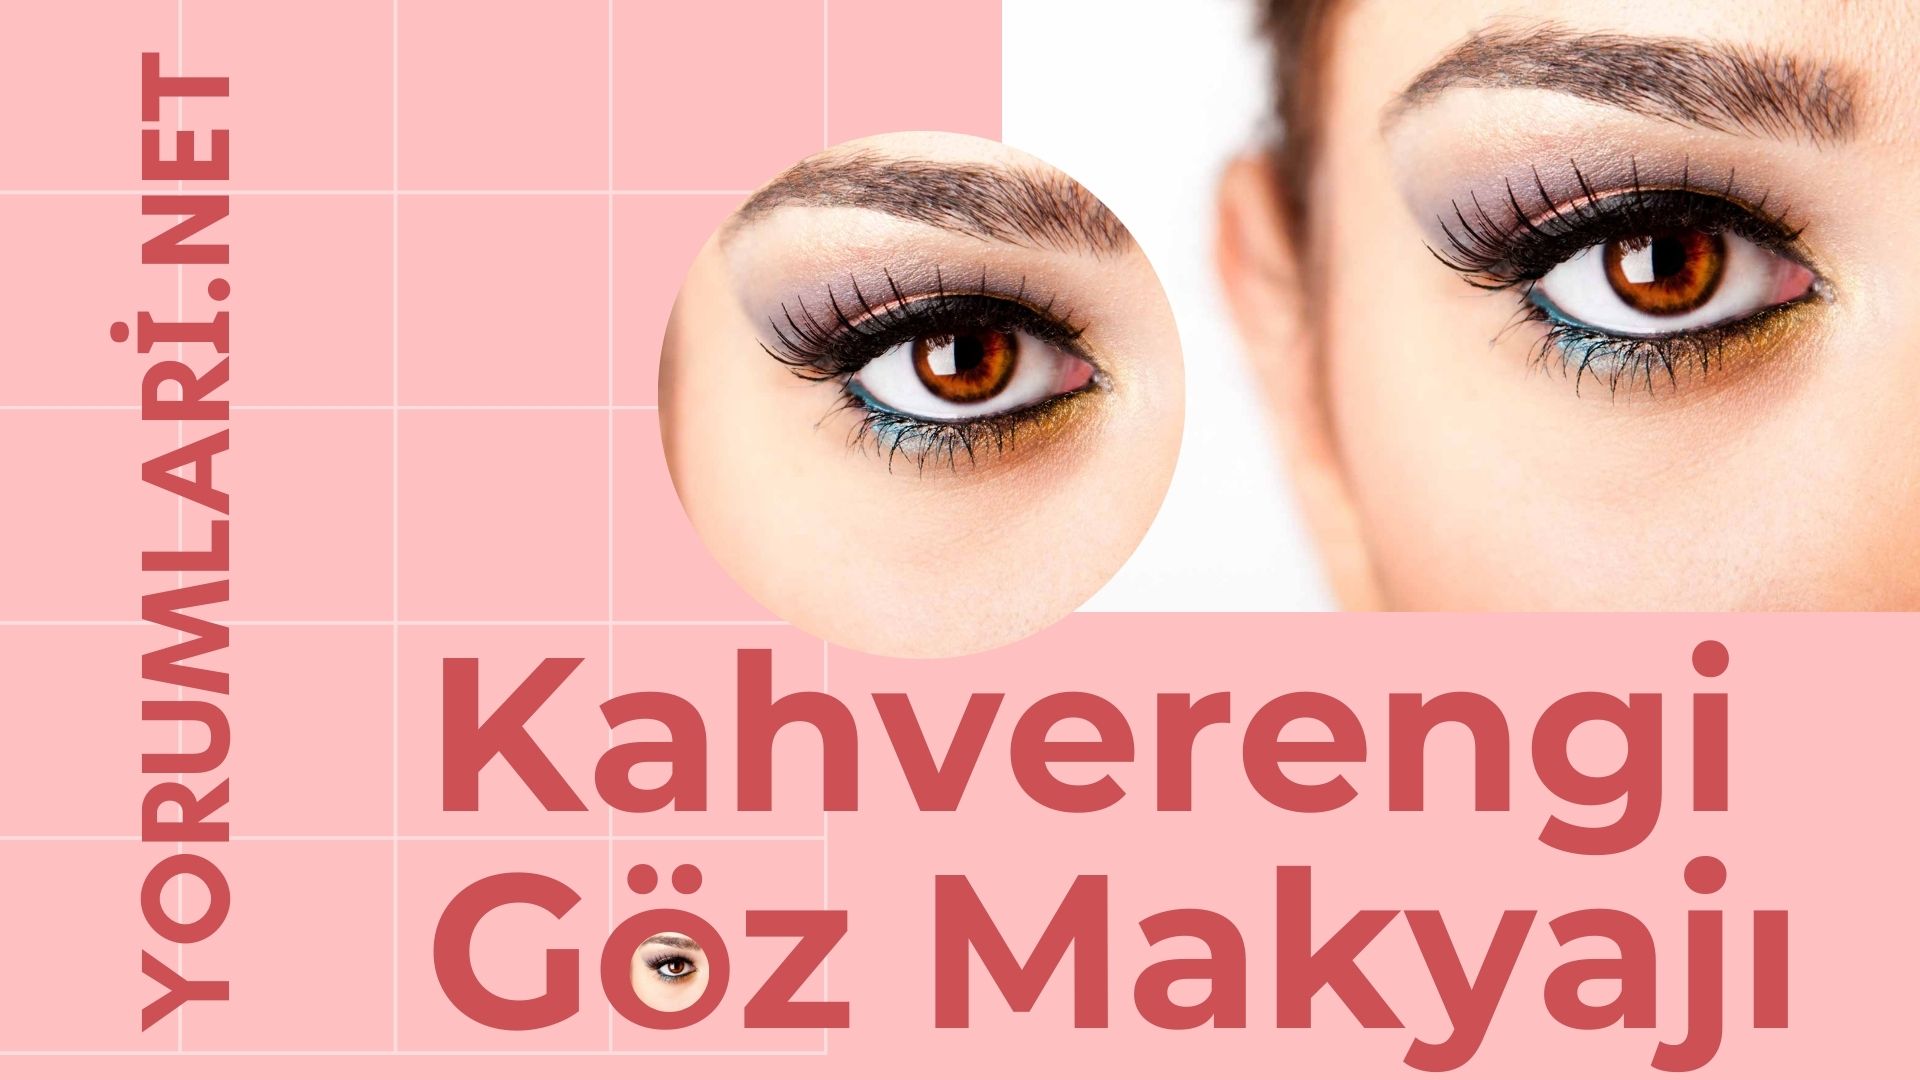 Kahverengi Göz Makyajı | Kahverengi Göz Makyajı Nasıl Yapılır Yorumları